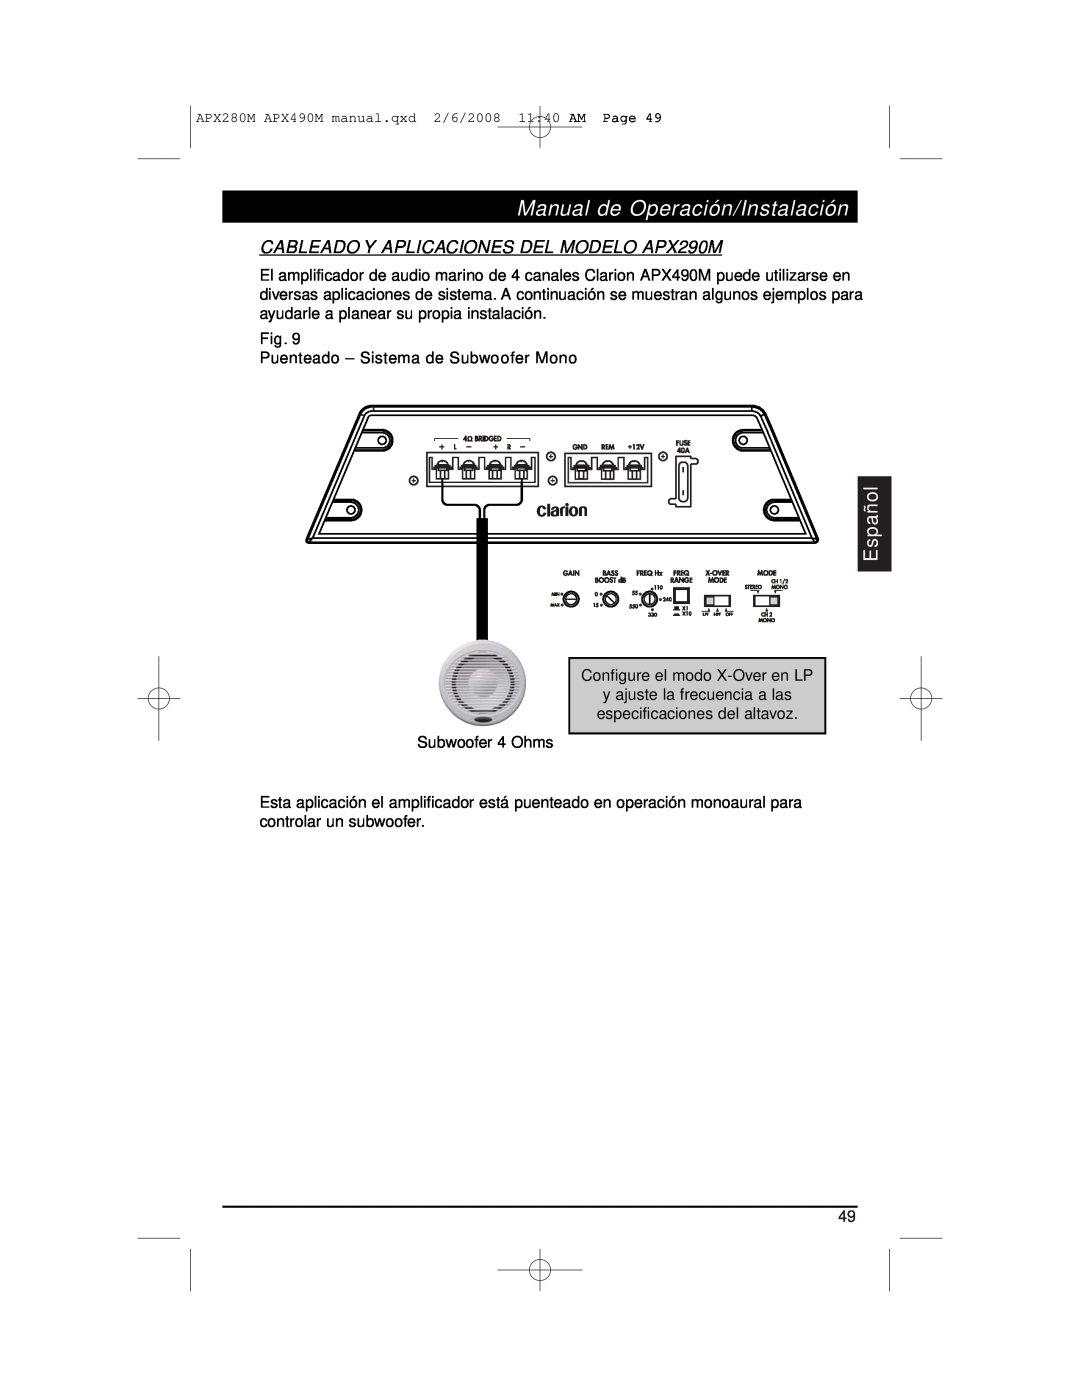 Clarion installation manual CABLEADO Y APLICACIONES DEL MODELO APX290M, Manual de Operación/Instalación, Español 